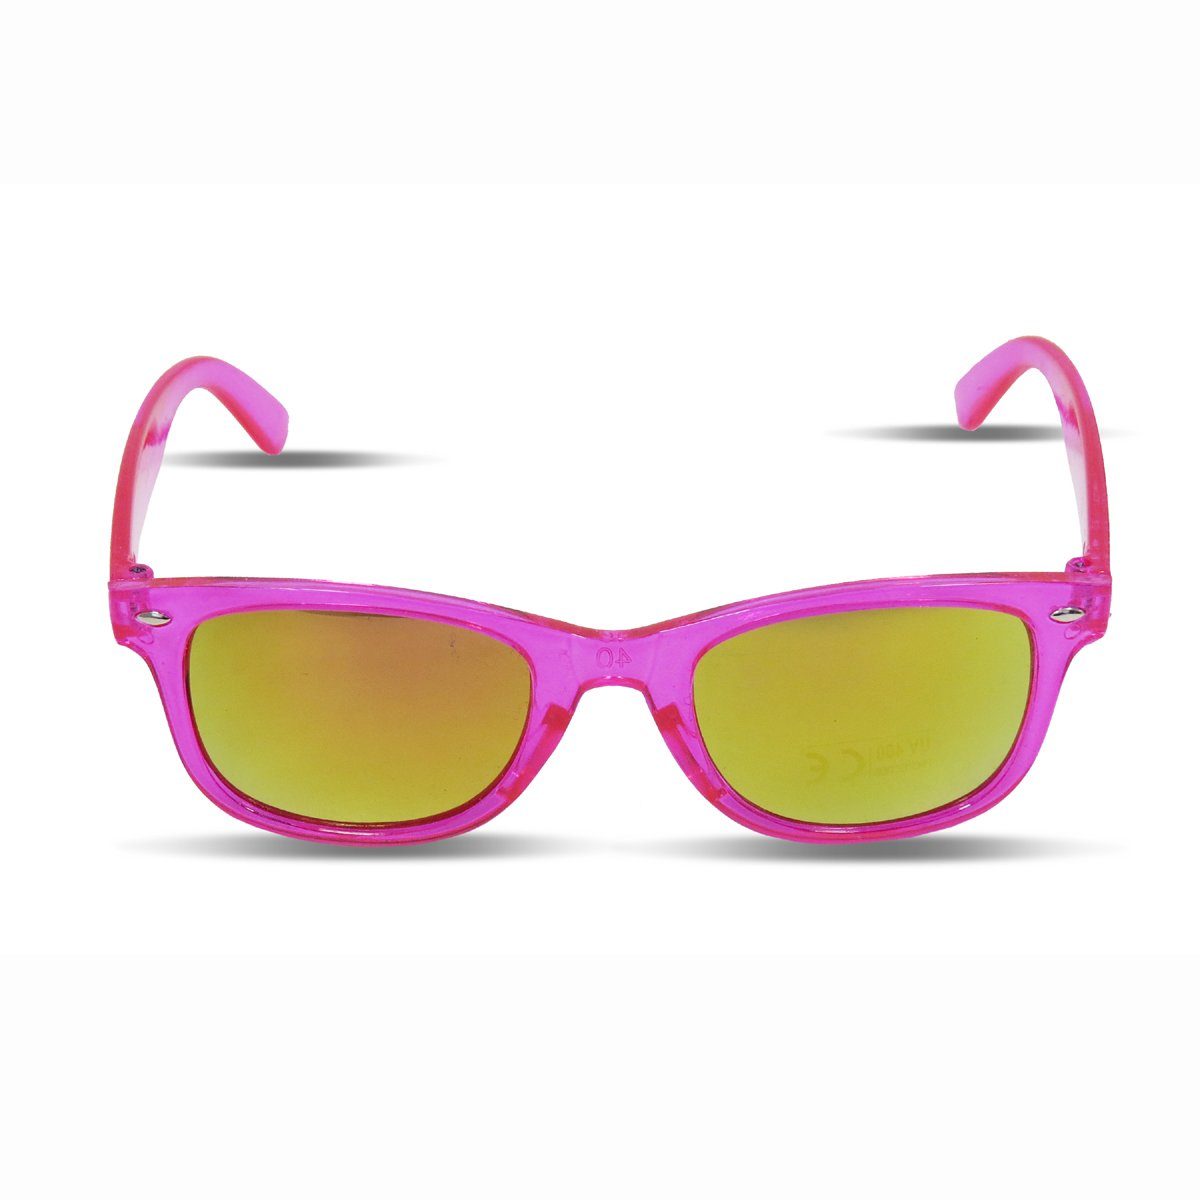 Sonia Originelli Sonnenbrille Kinder Sonnenbrille "Kids Style" Verspiegelt Brille Transparent Onesize pink